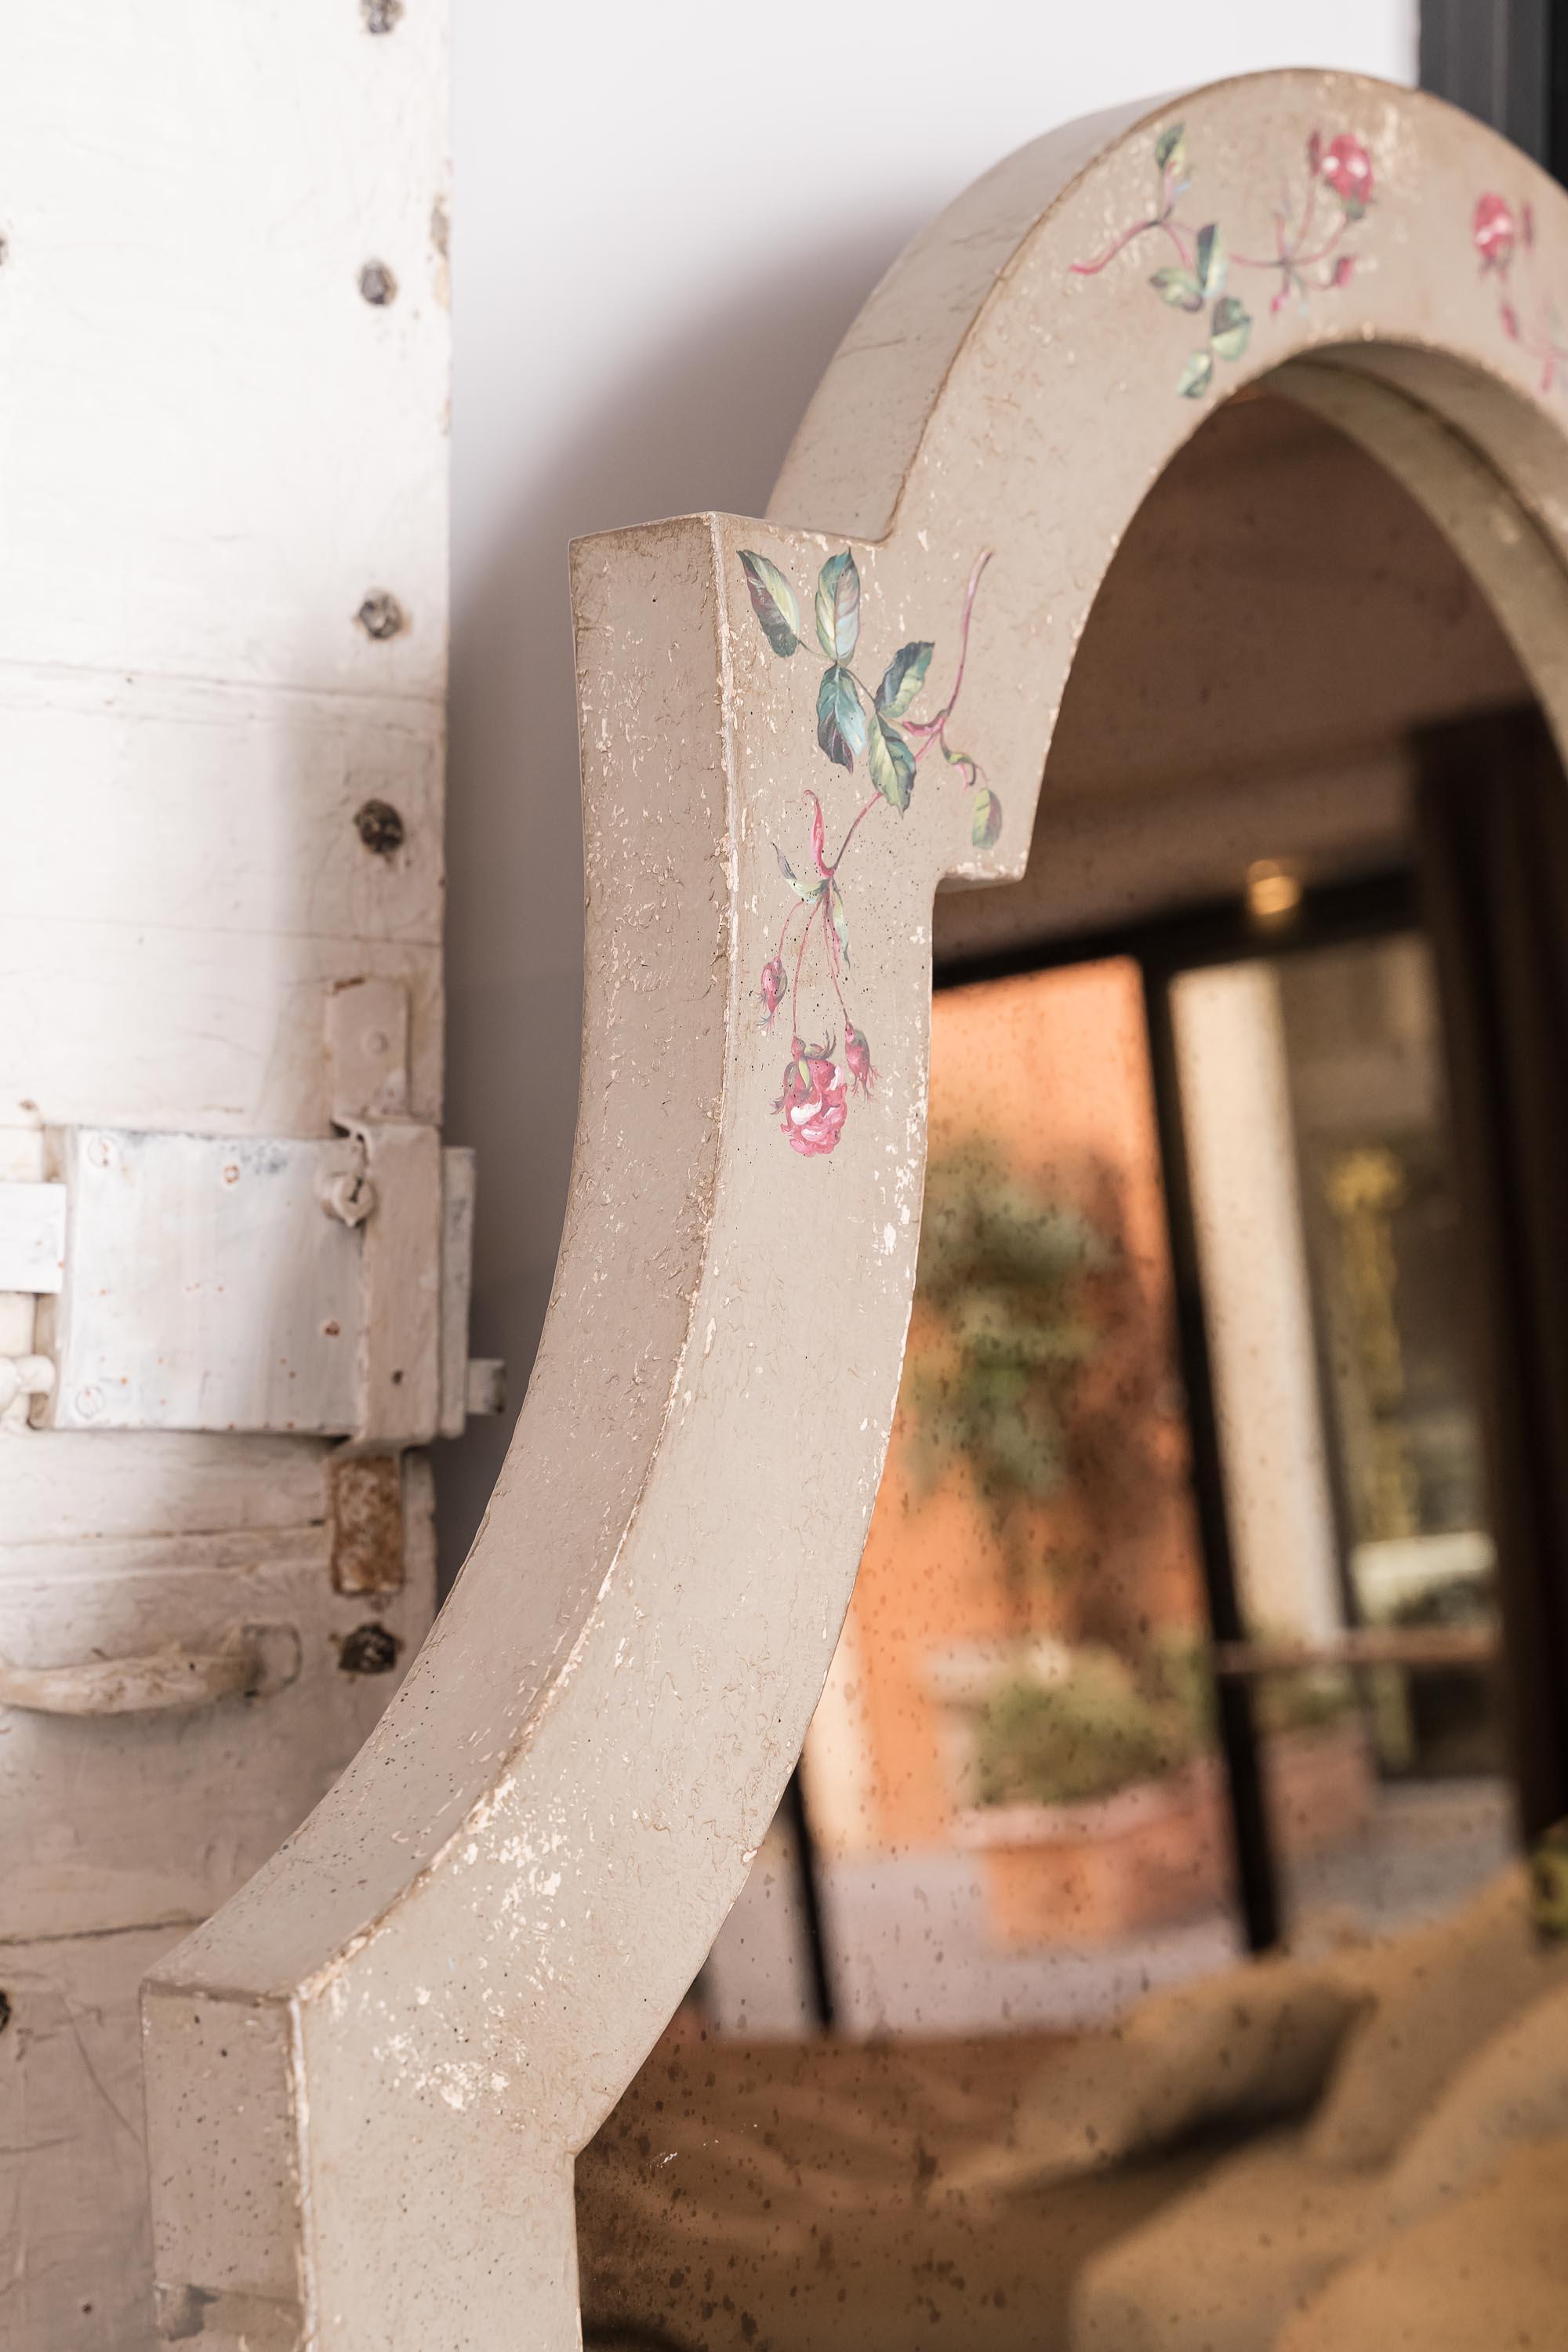 Aus unserer Hand-Painted Furniture Collection stellen wir Ihnen den Positano-Spiegel in Taupe mit kleinen Rosen vor. 
Unter unseren handbemalten Spiegeln ist der Positano definitiv einer unserer Favoriten, mit seinen sanften Kurven, die die Größe